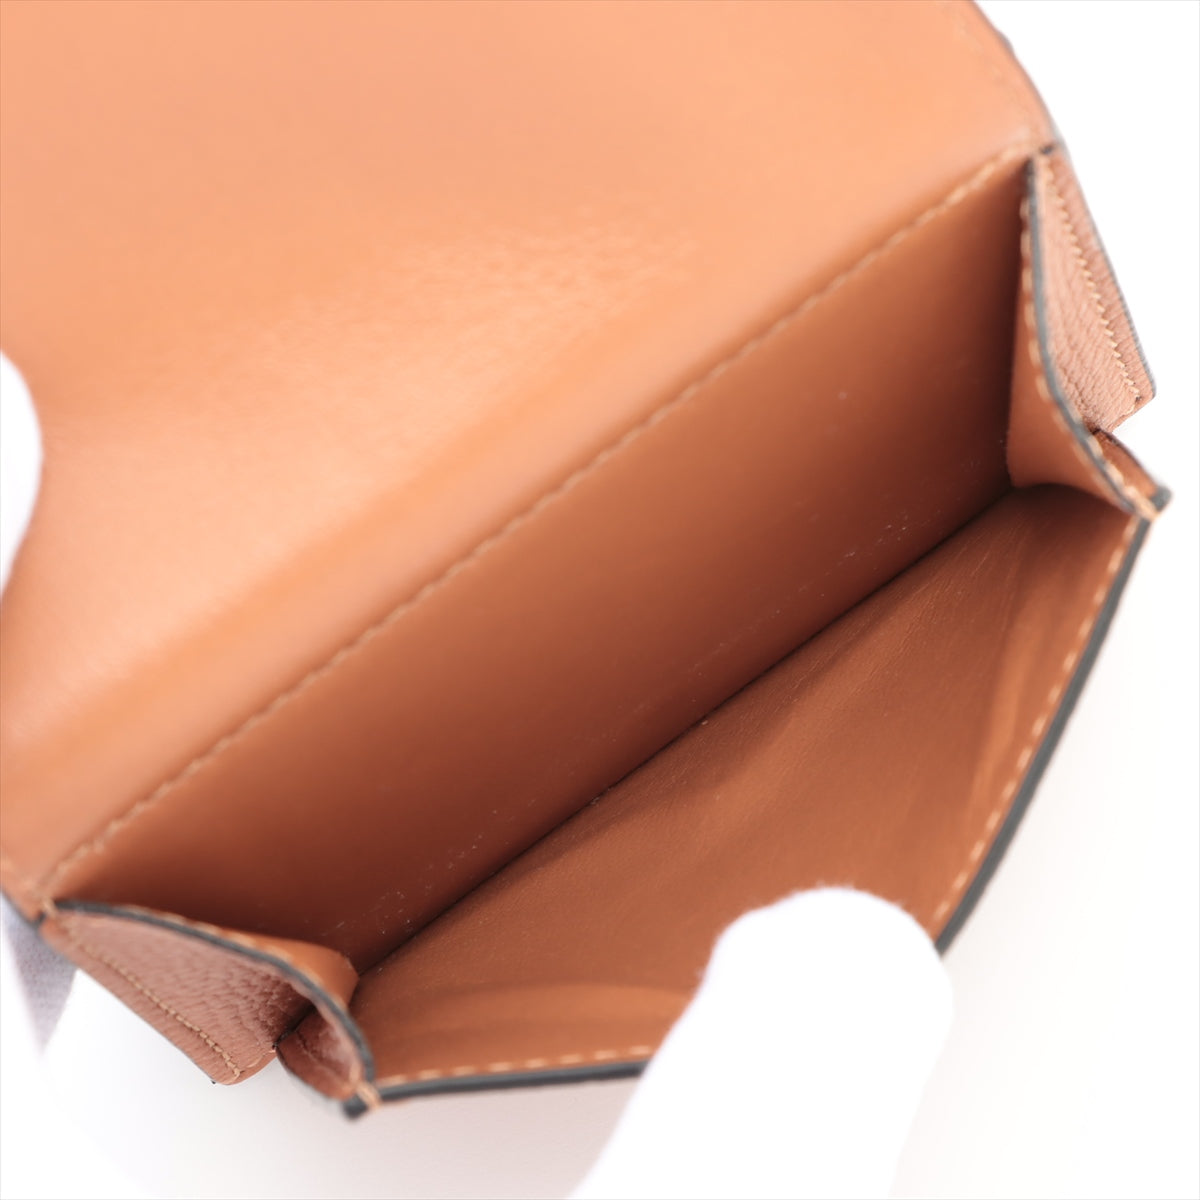 Loewe Anagram Tri Fold Leather Wallet Brown